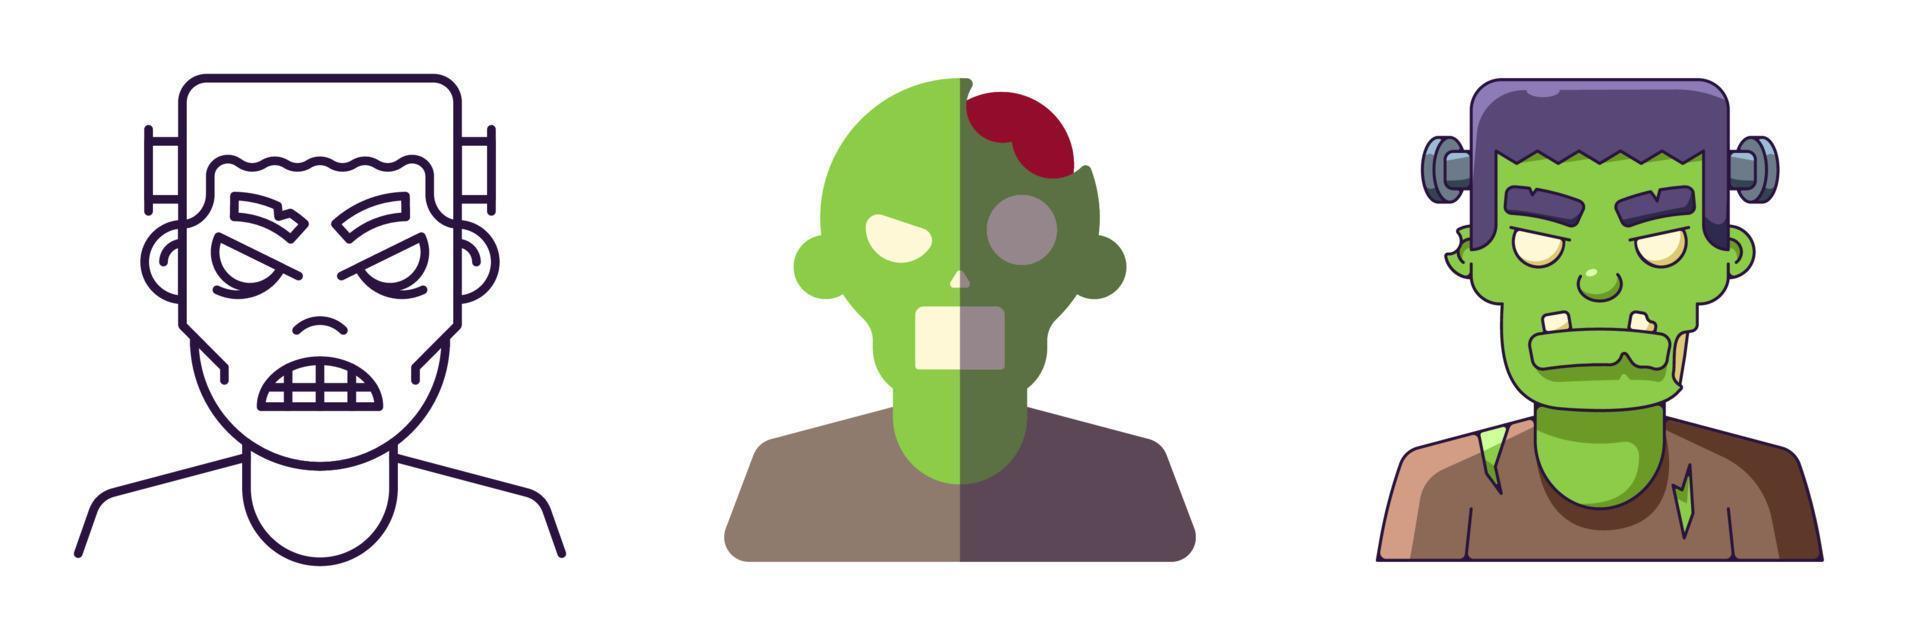 éléments d'halloween. jeu d'icônes vectorielles de zombie dessiné dans des styles de ligne, plat et dessin animé. parfait pour les applications, les livres, les articles, les magasins, les magasins, les publicités vecteur